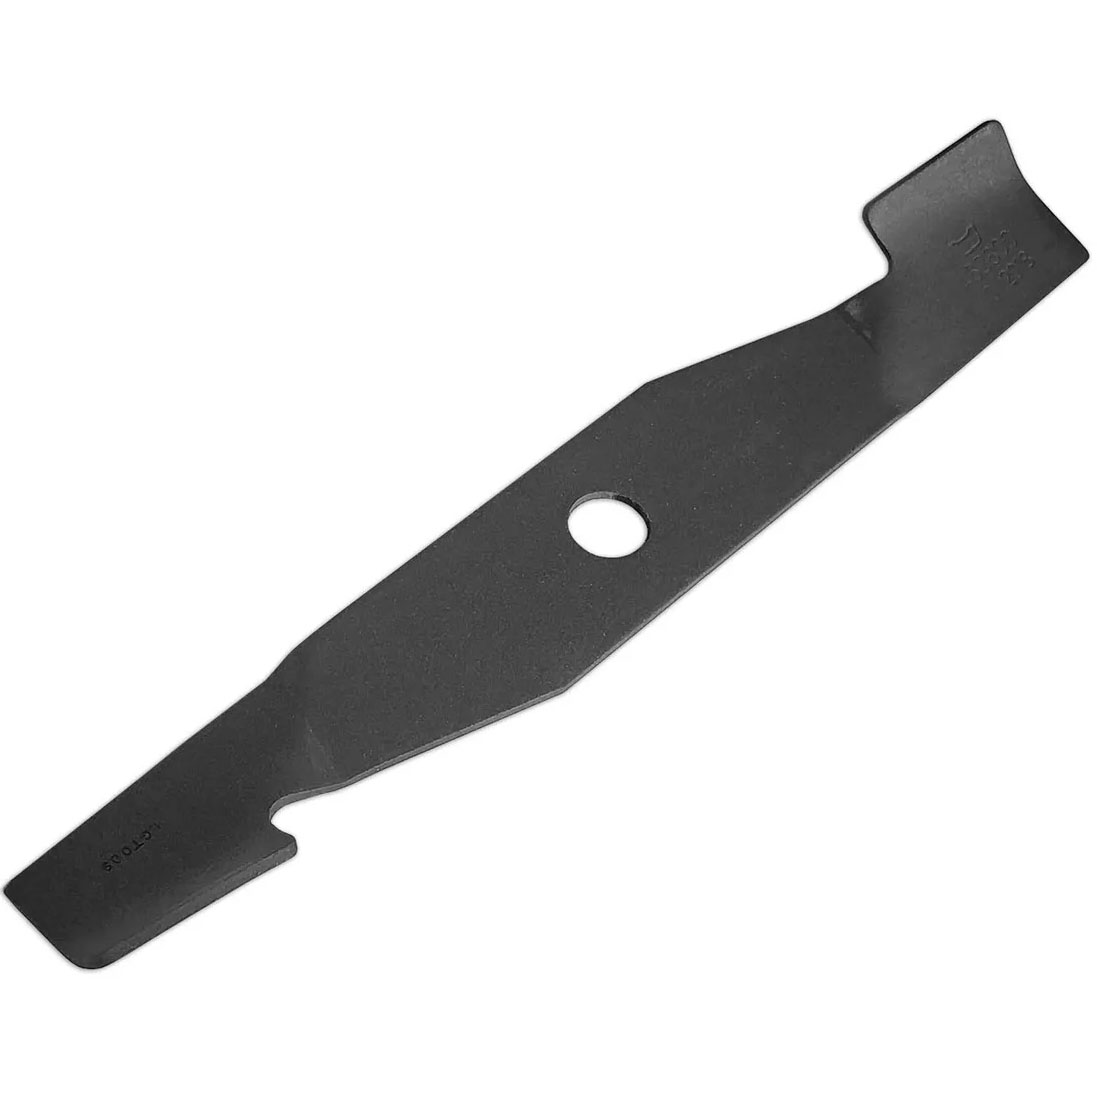 Нож для газонокосилок AL-KO 463800 34 см нож подходит для газонокосилки al ko comfort 34e 463800 34 см